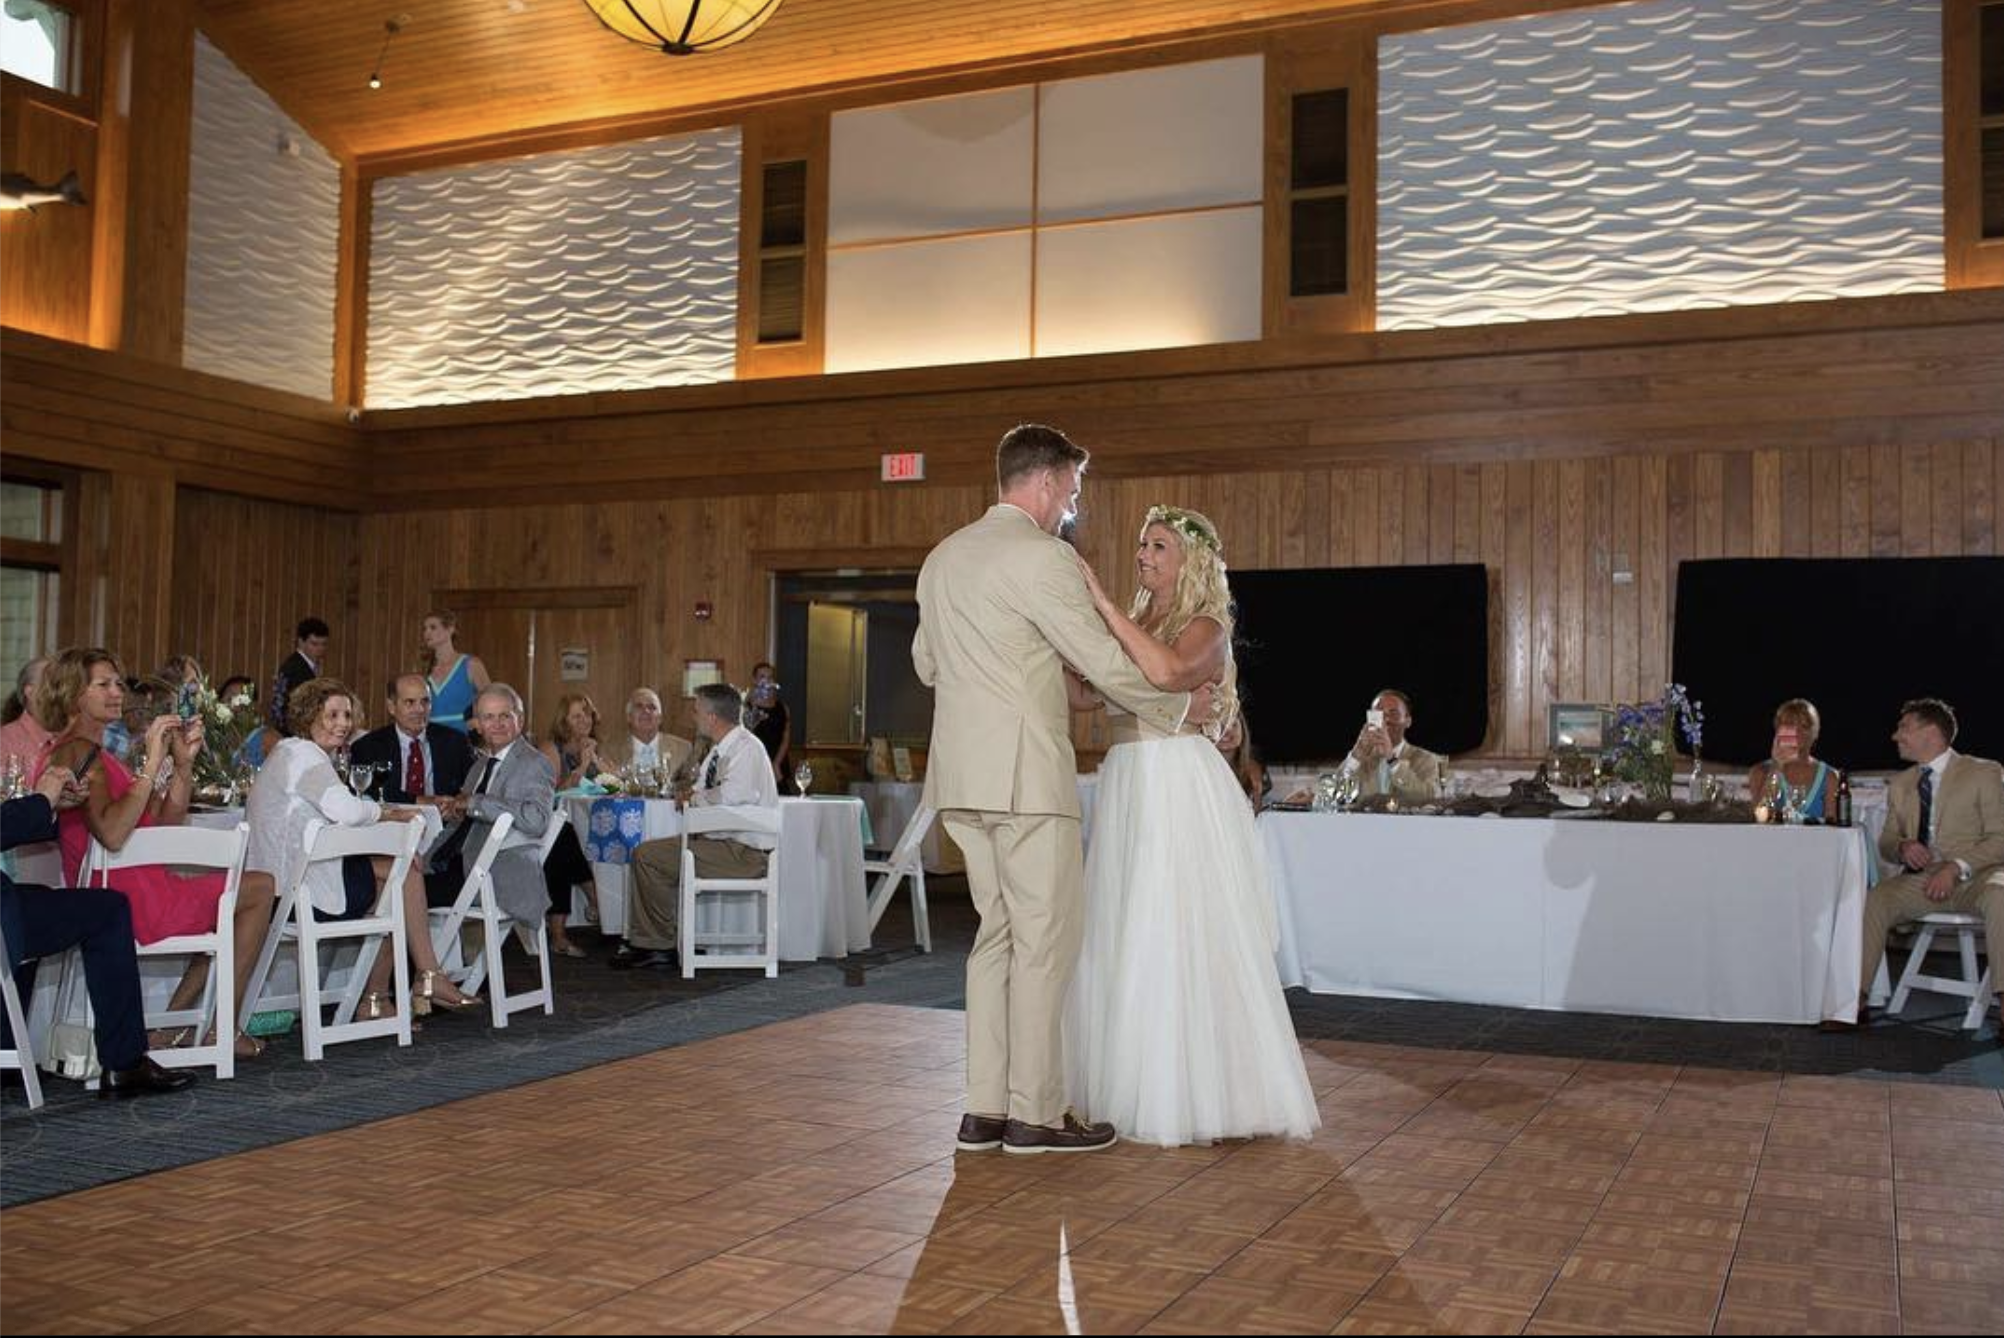 Dancing on Oak style wedding dance floor indoors